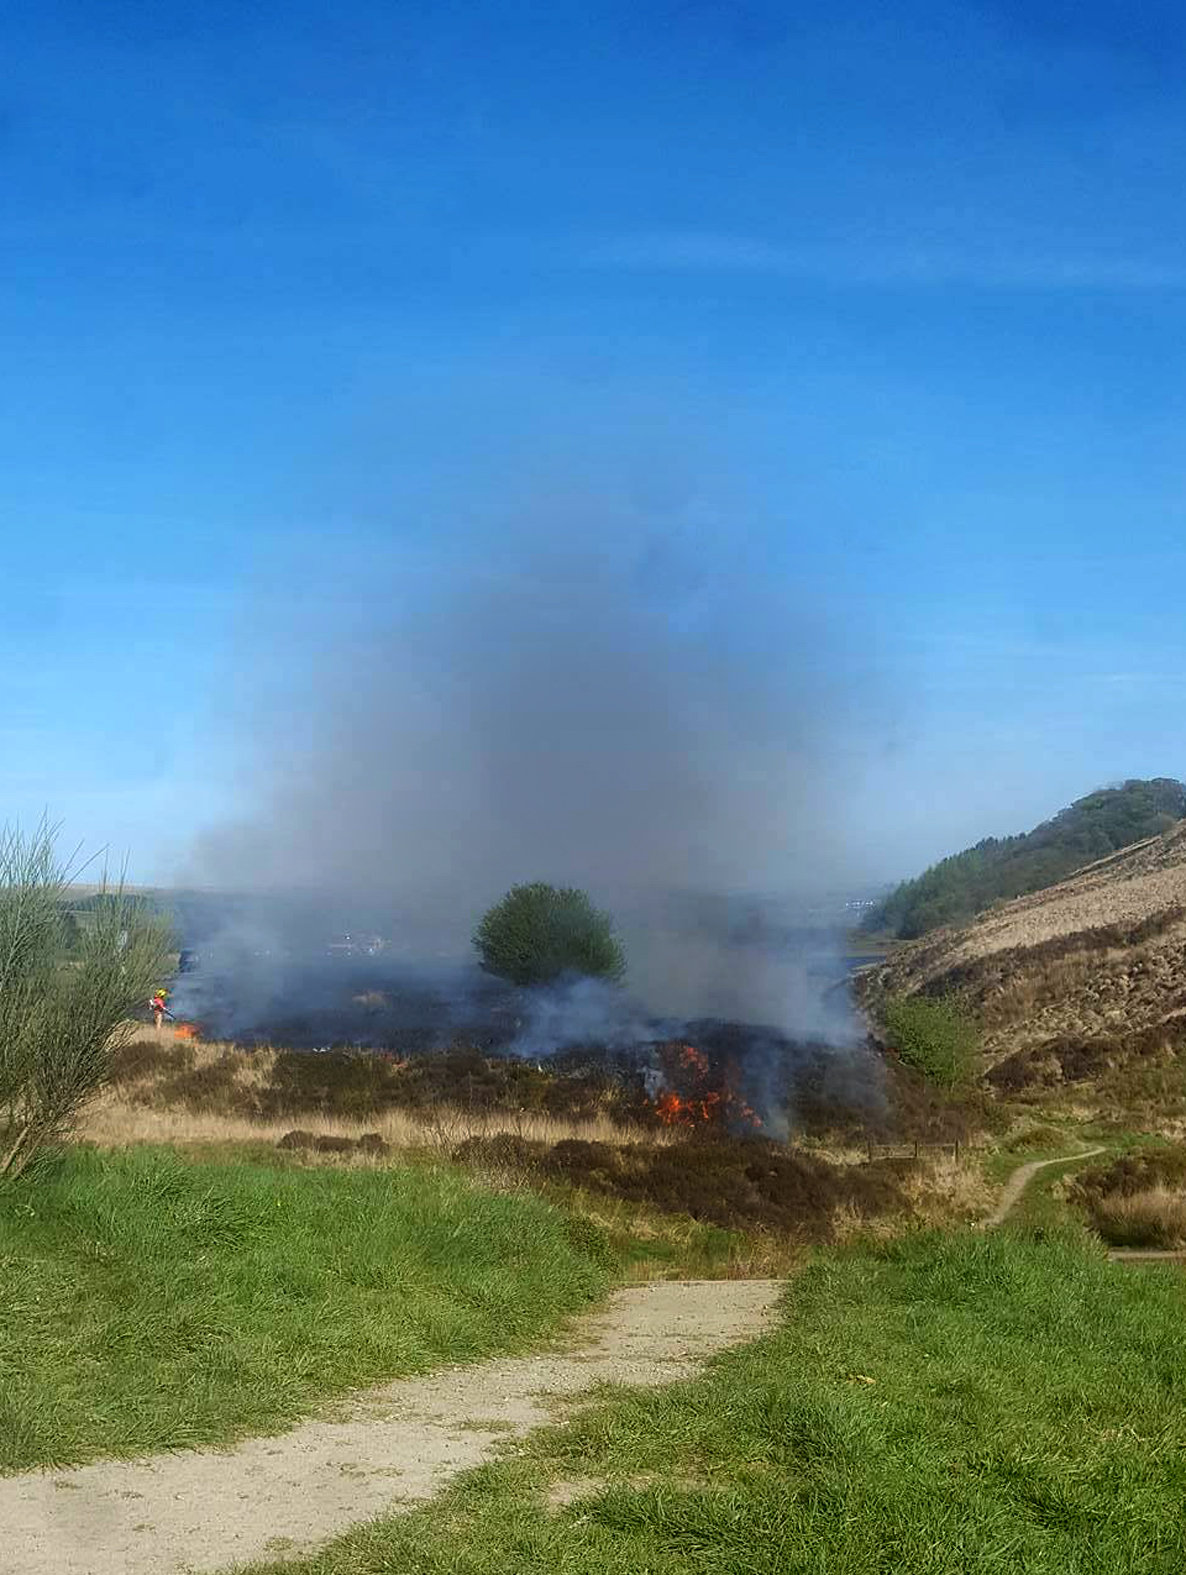 'Suspicious' - Arson fears after crews battle THREE grassland fires in 1 night